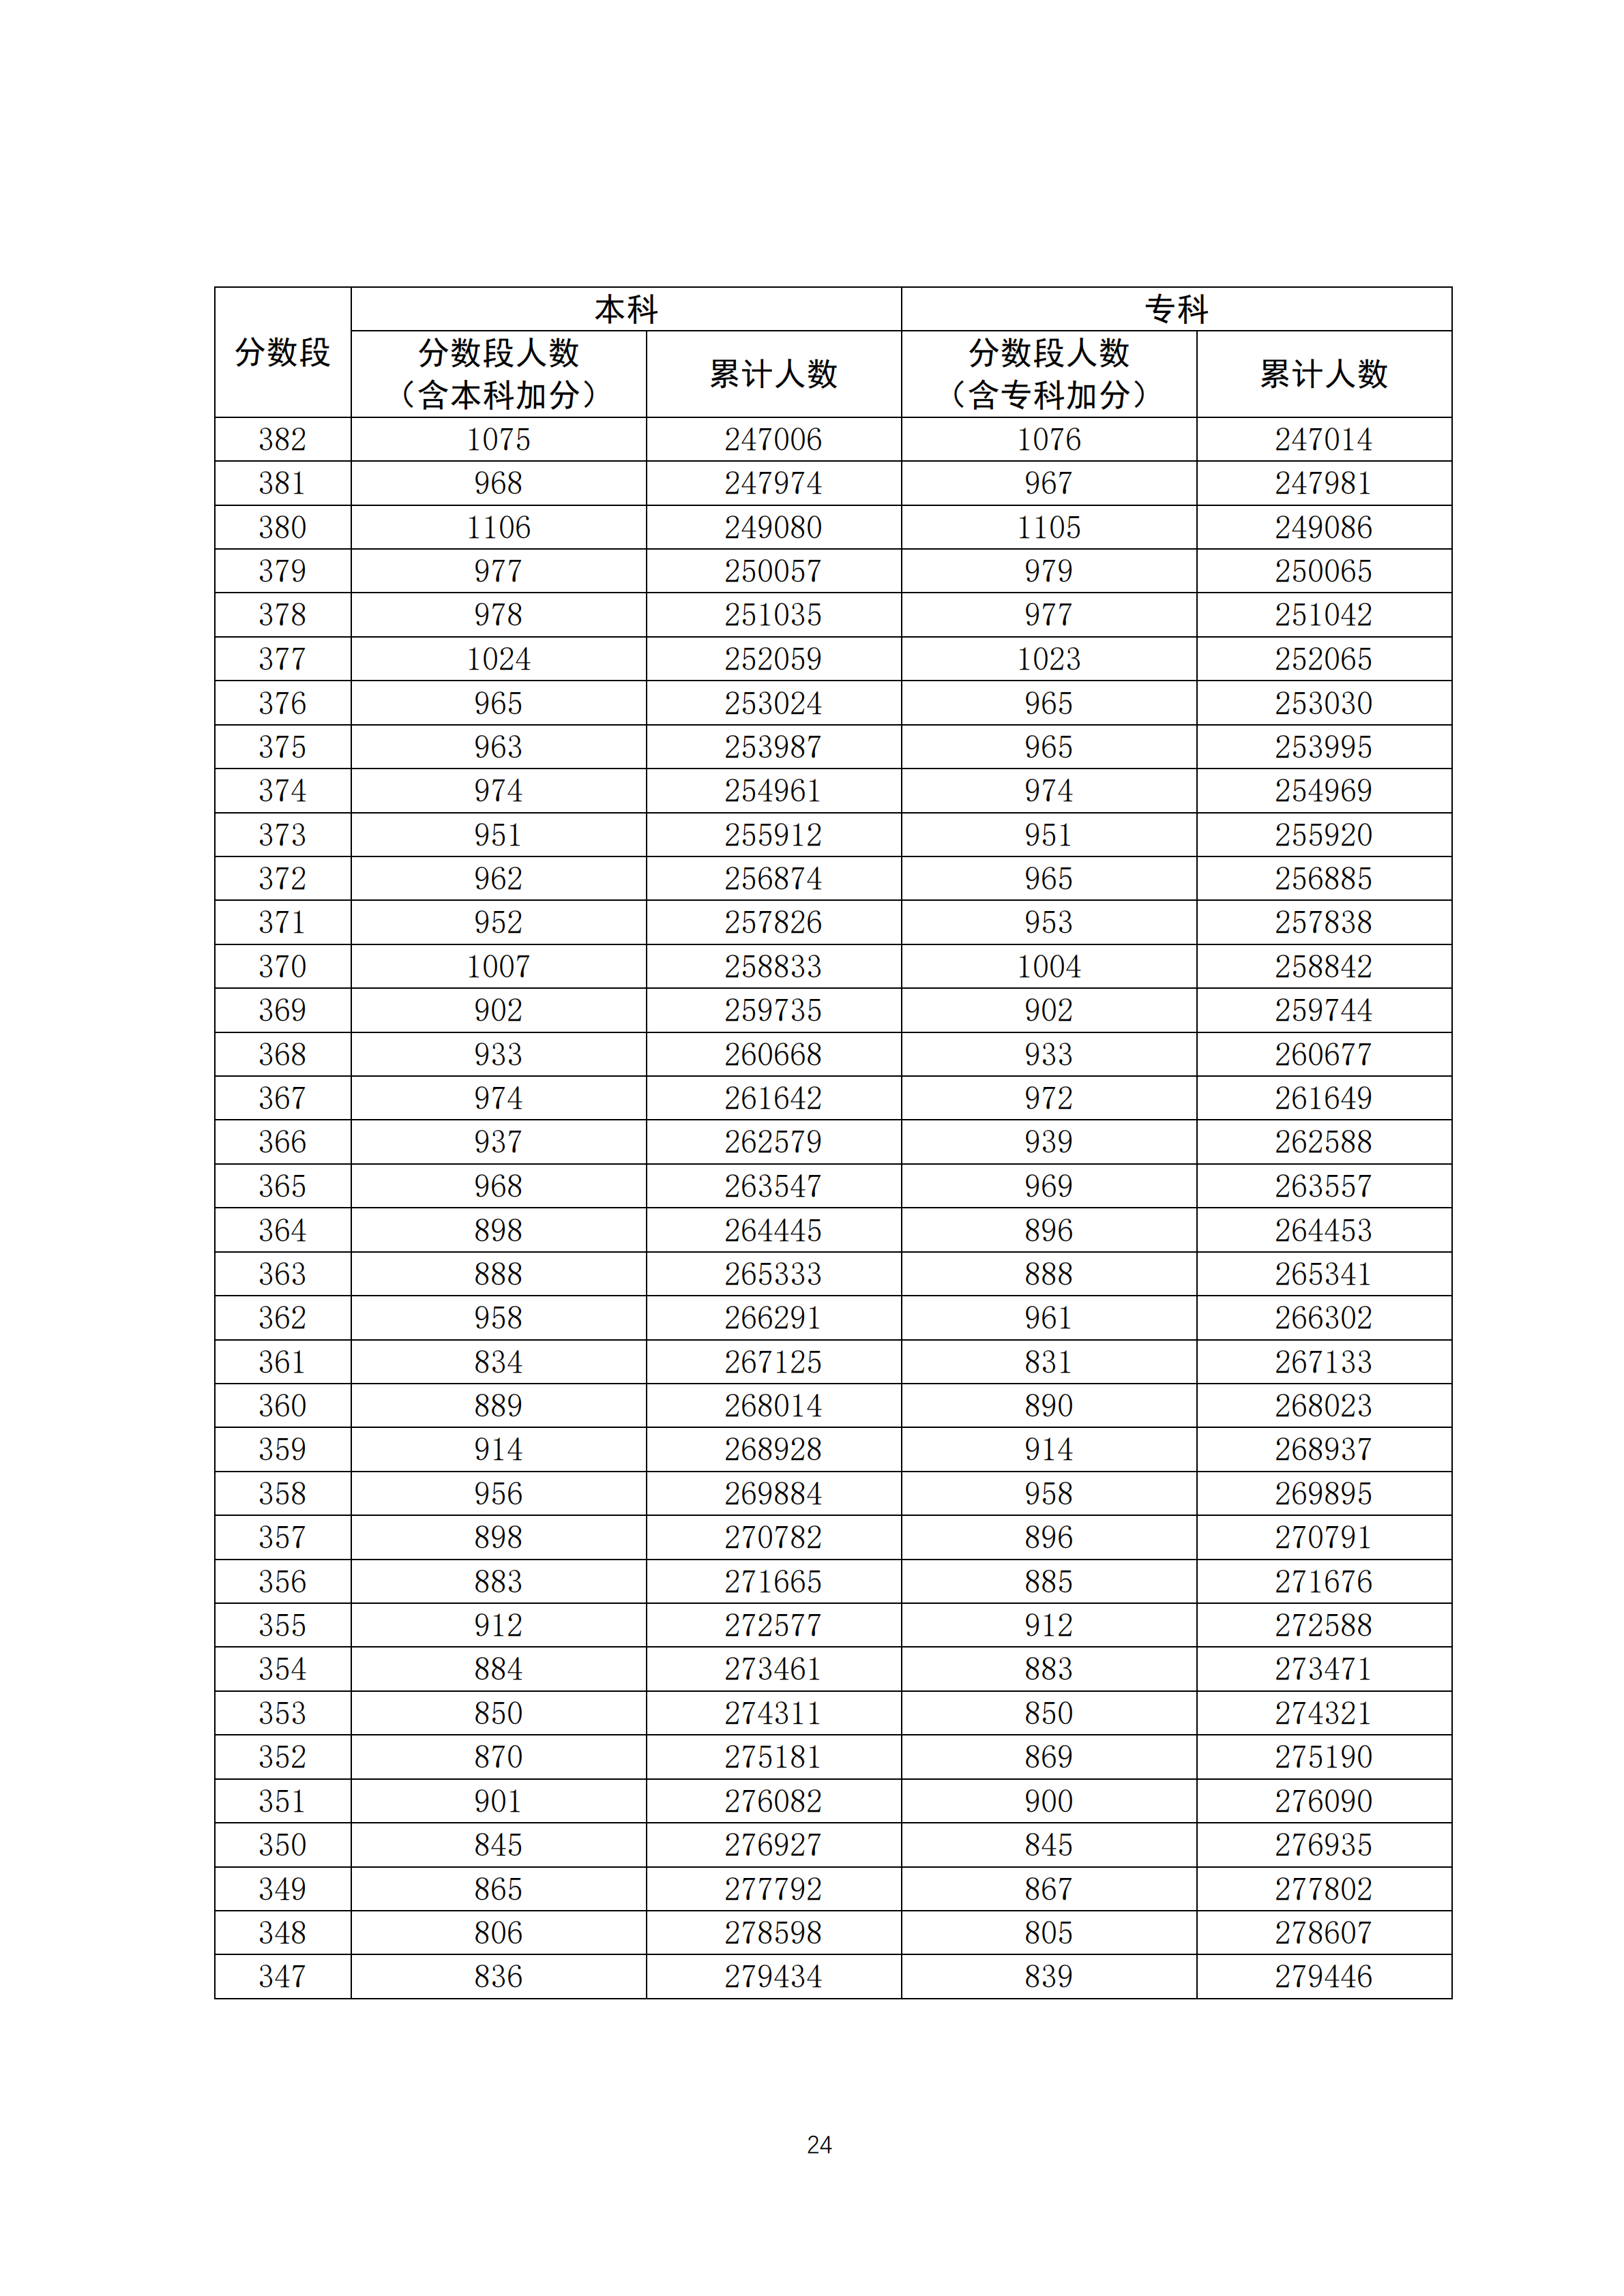 2020广东高考理科一分一段表 最新高考成绩排名